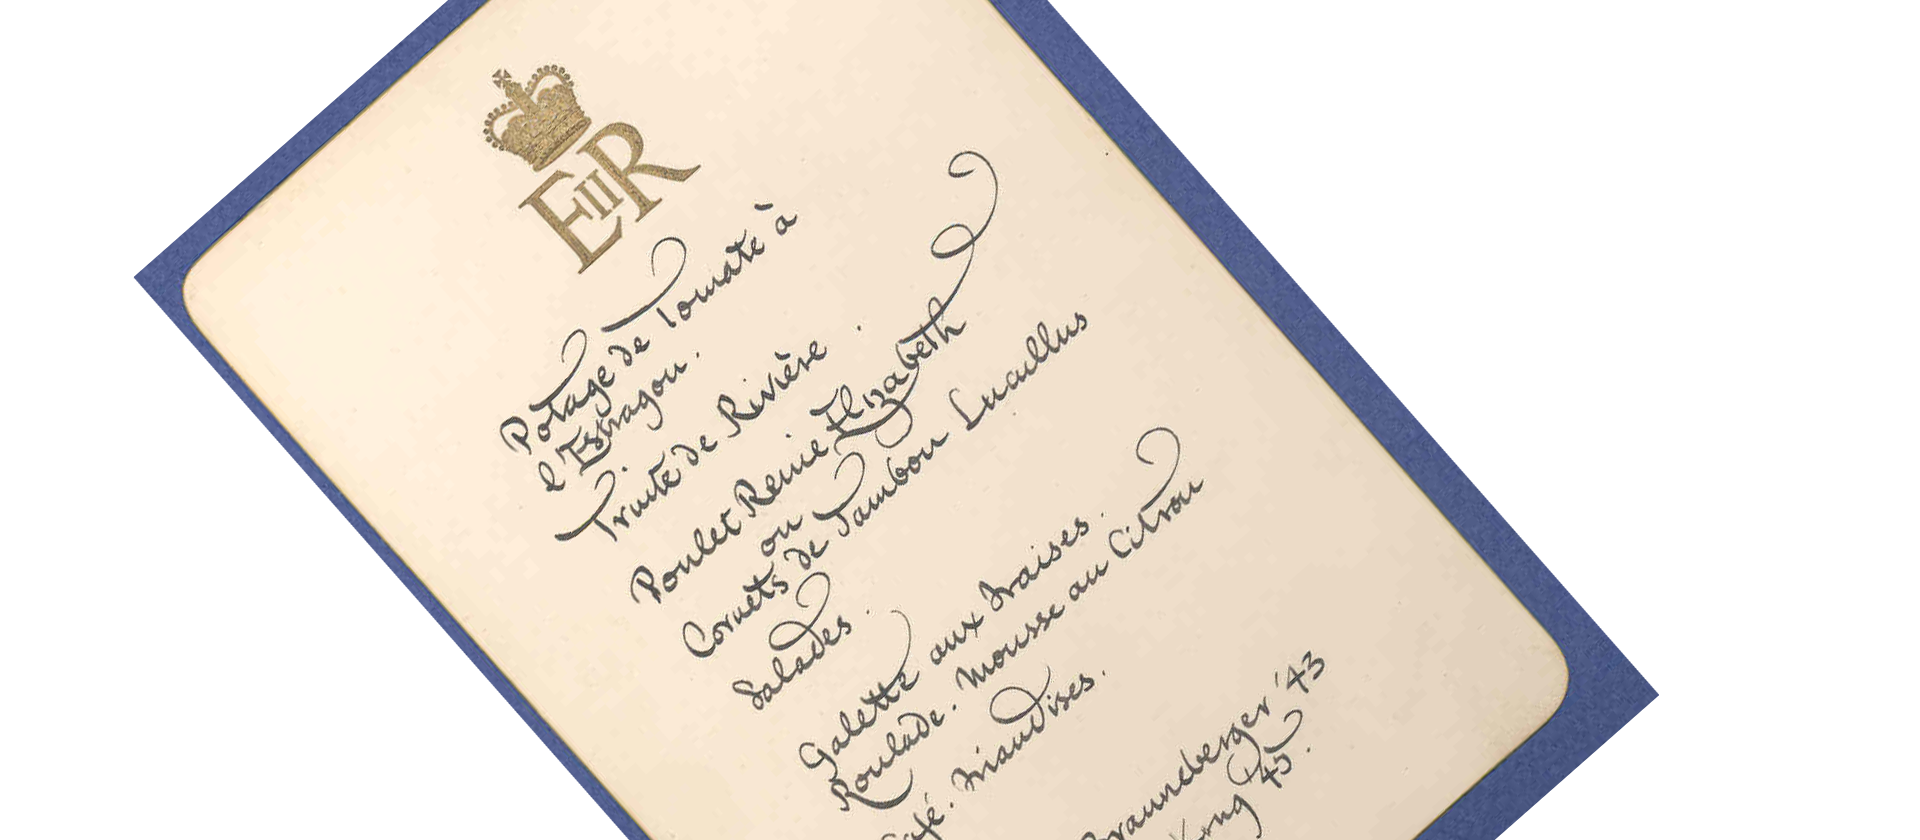 Queen Elizabeth's coronation menu